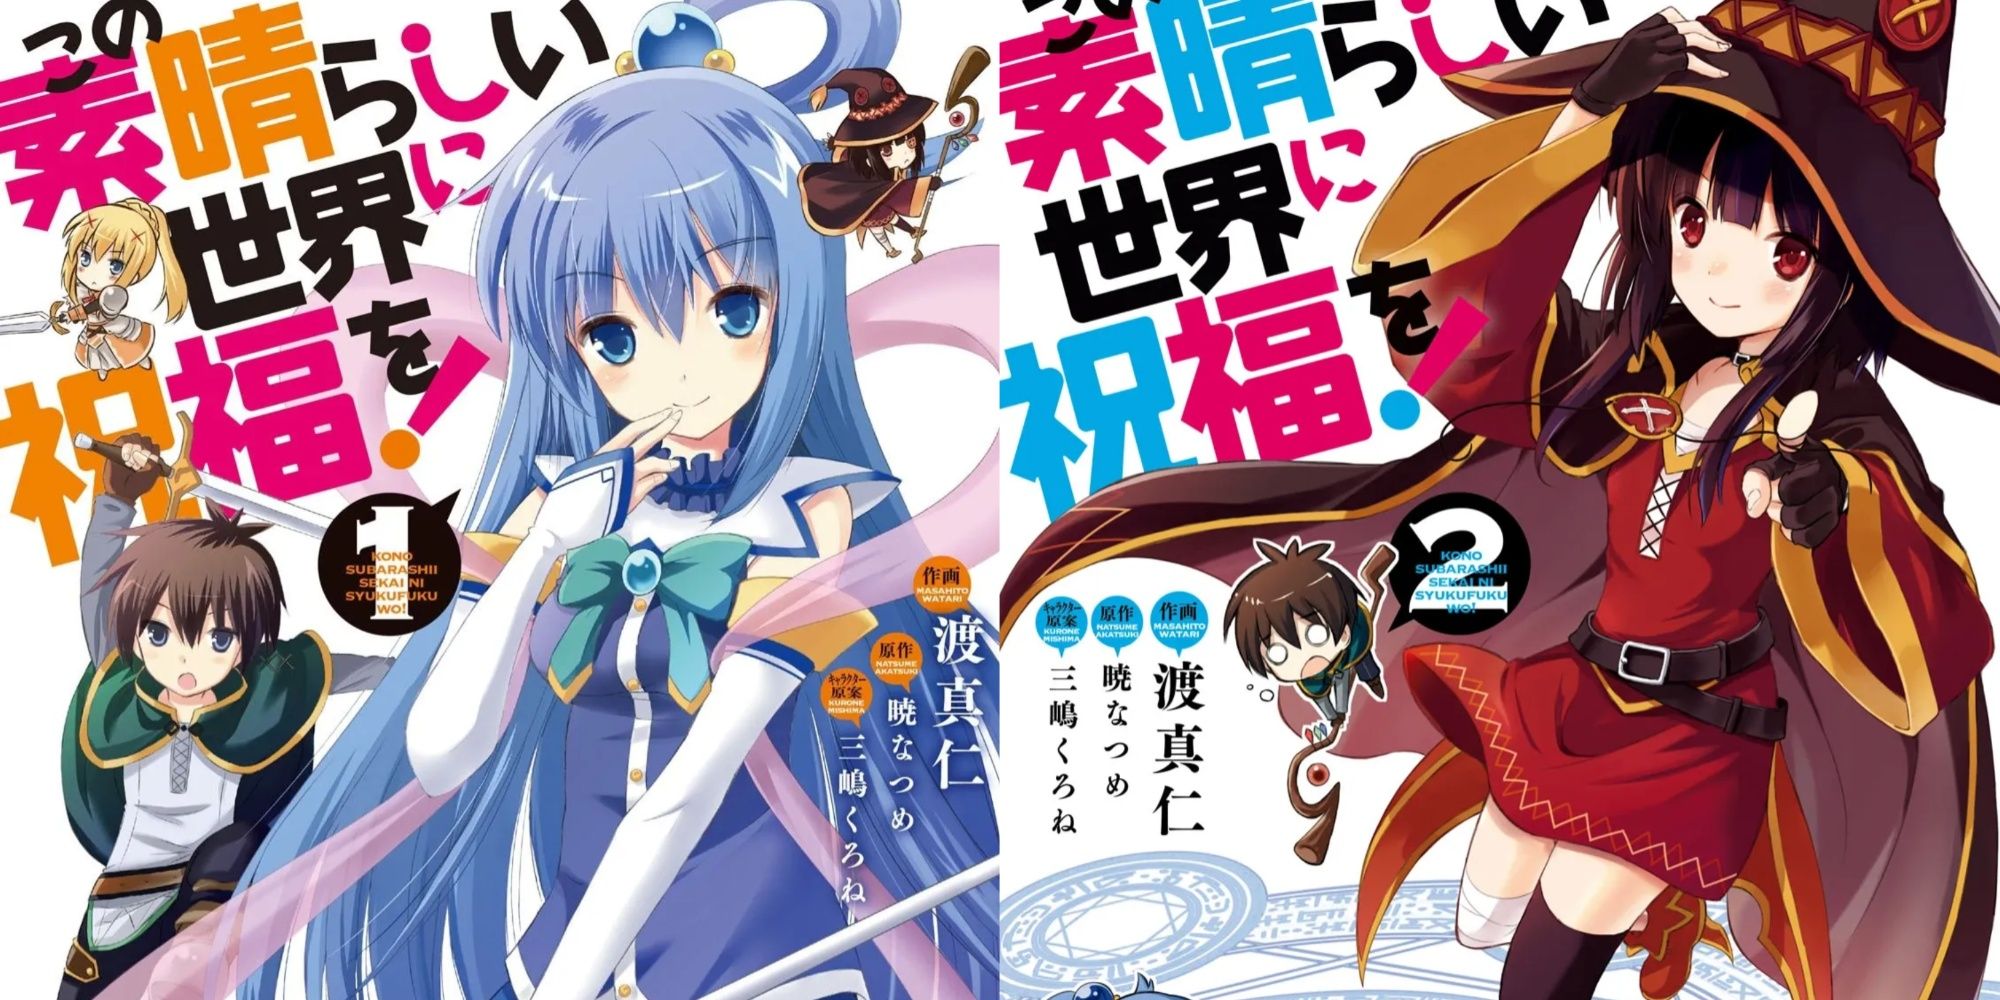 Satou Aqua and Megumin on KonoSuba Manga